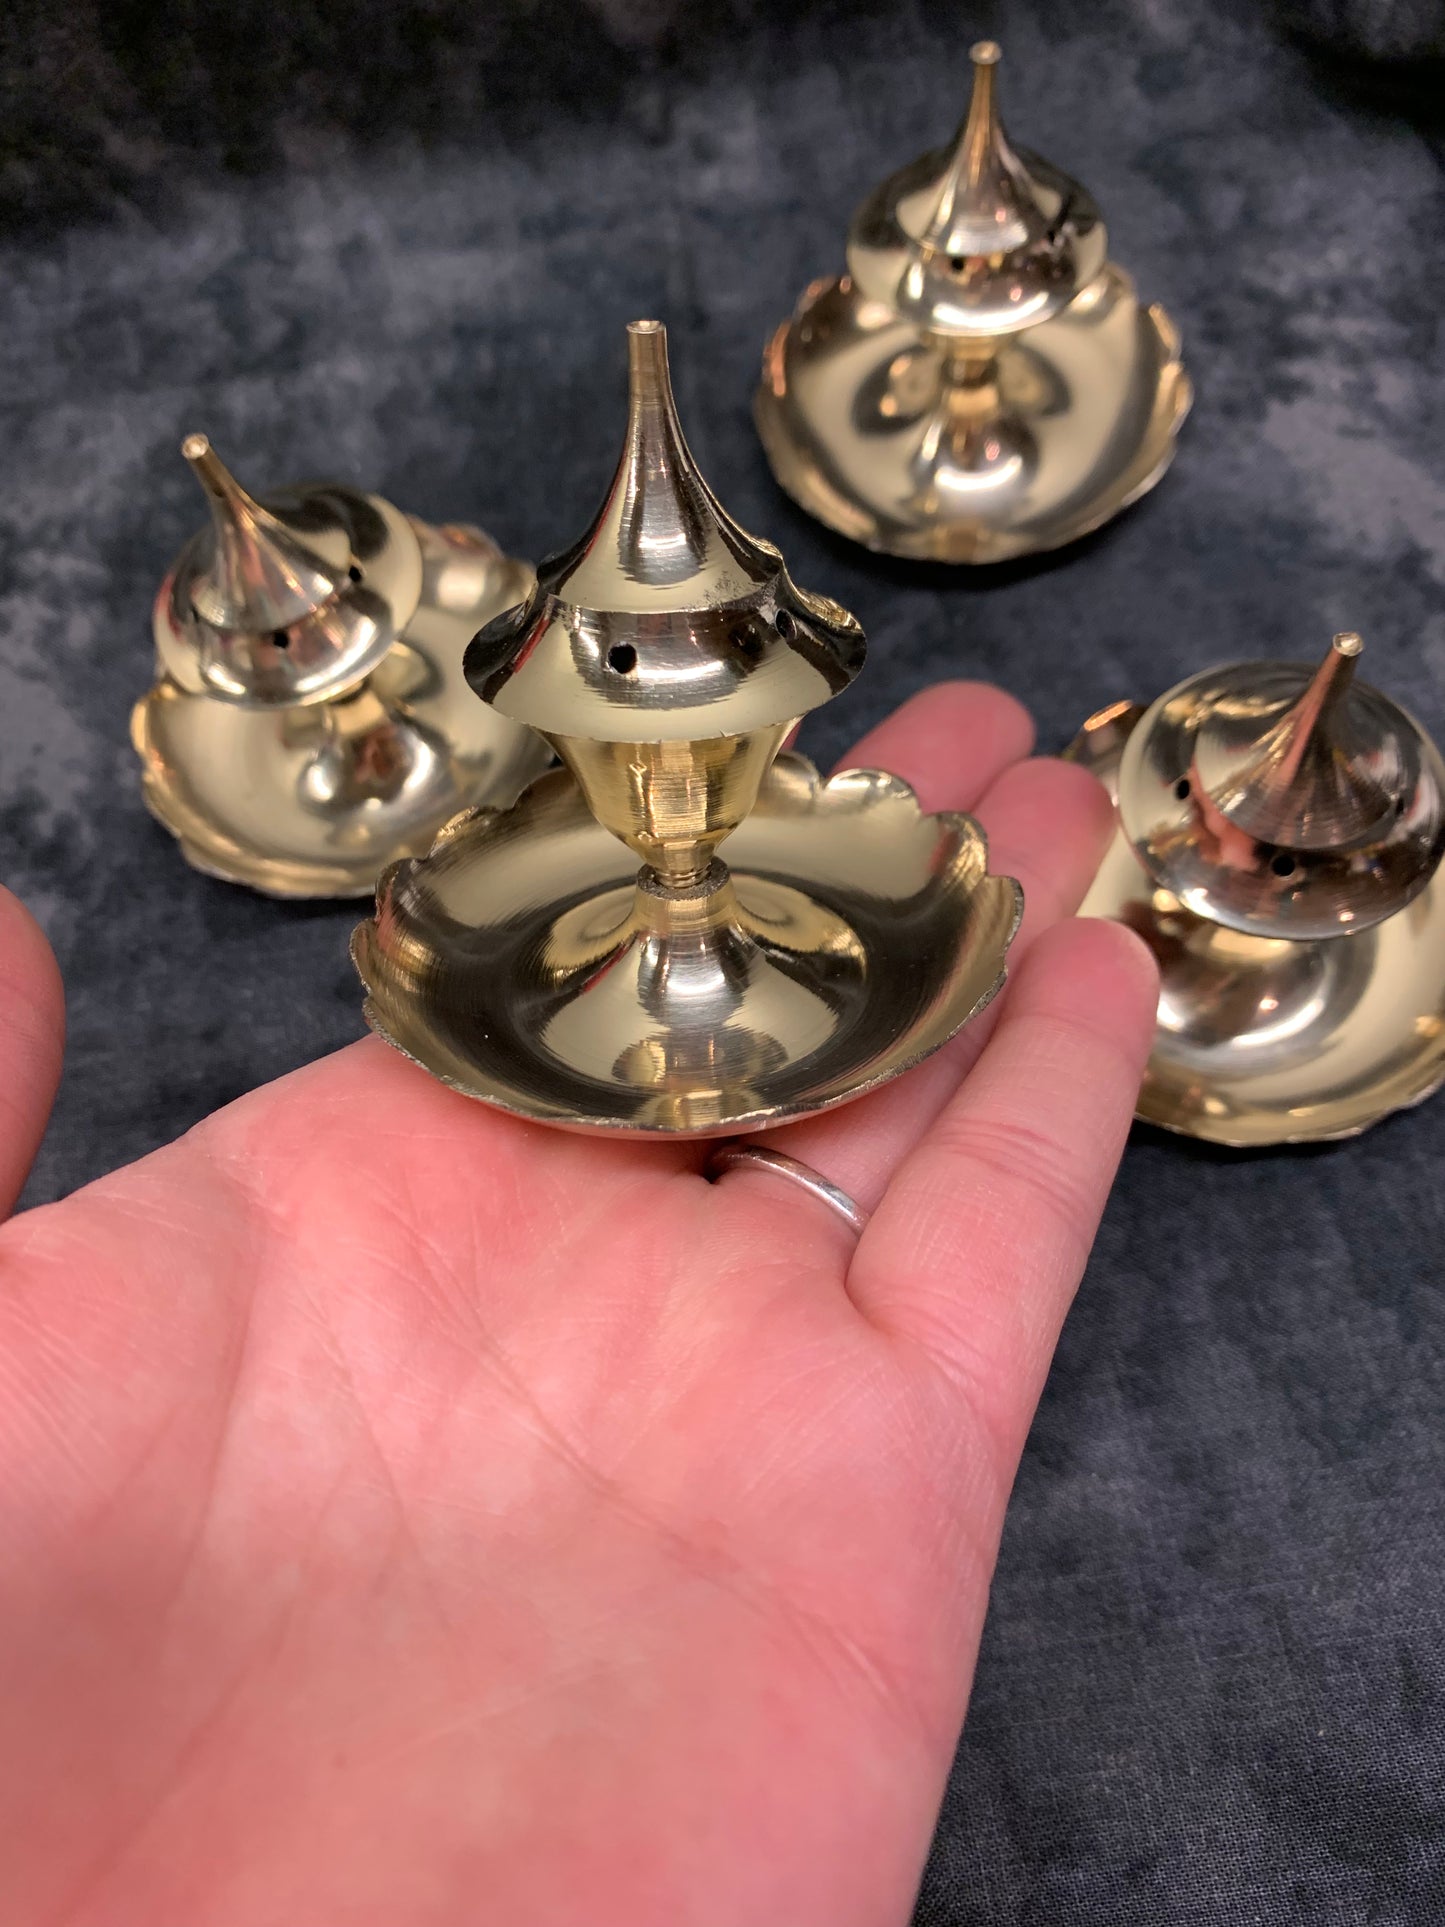 Brass incense holder/burner